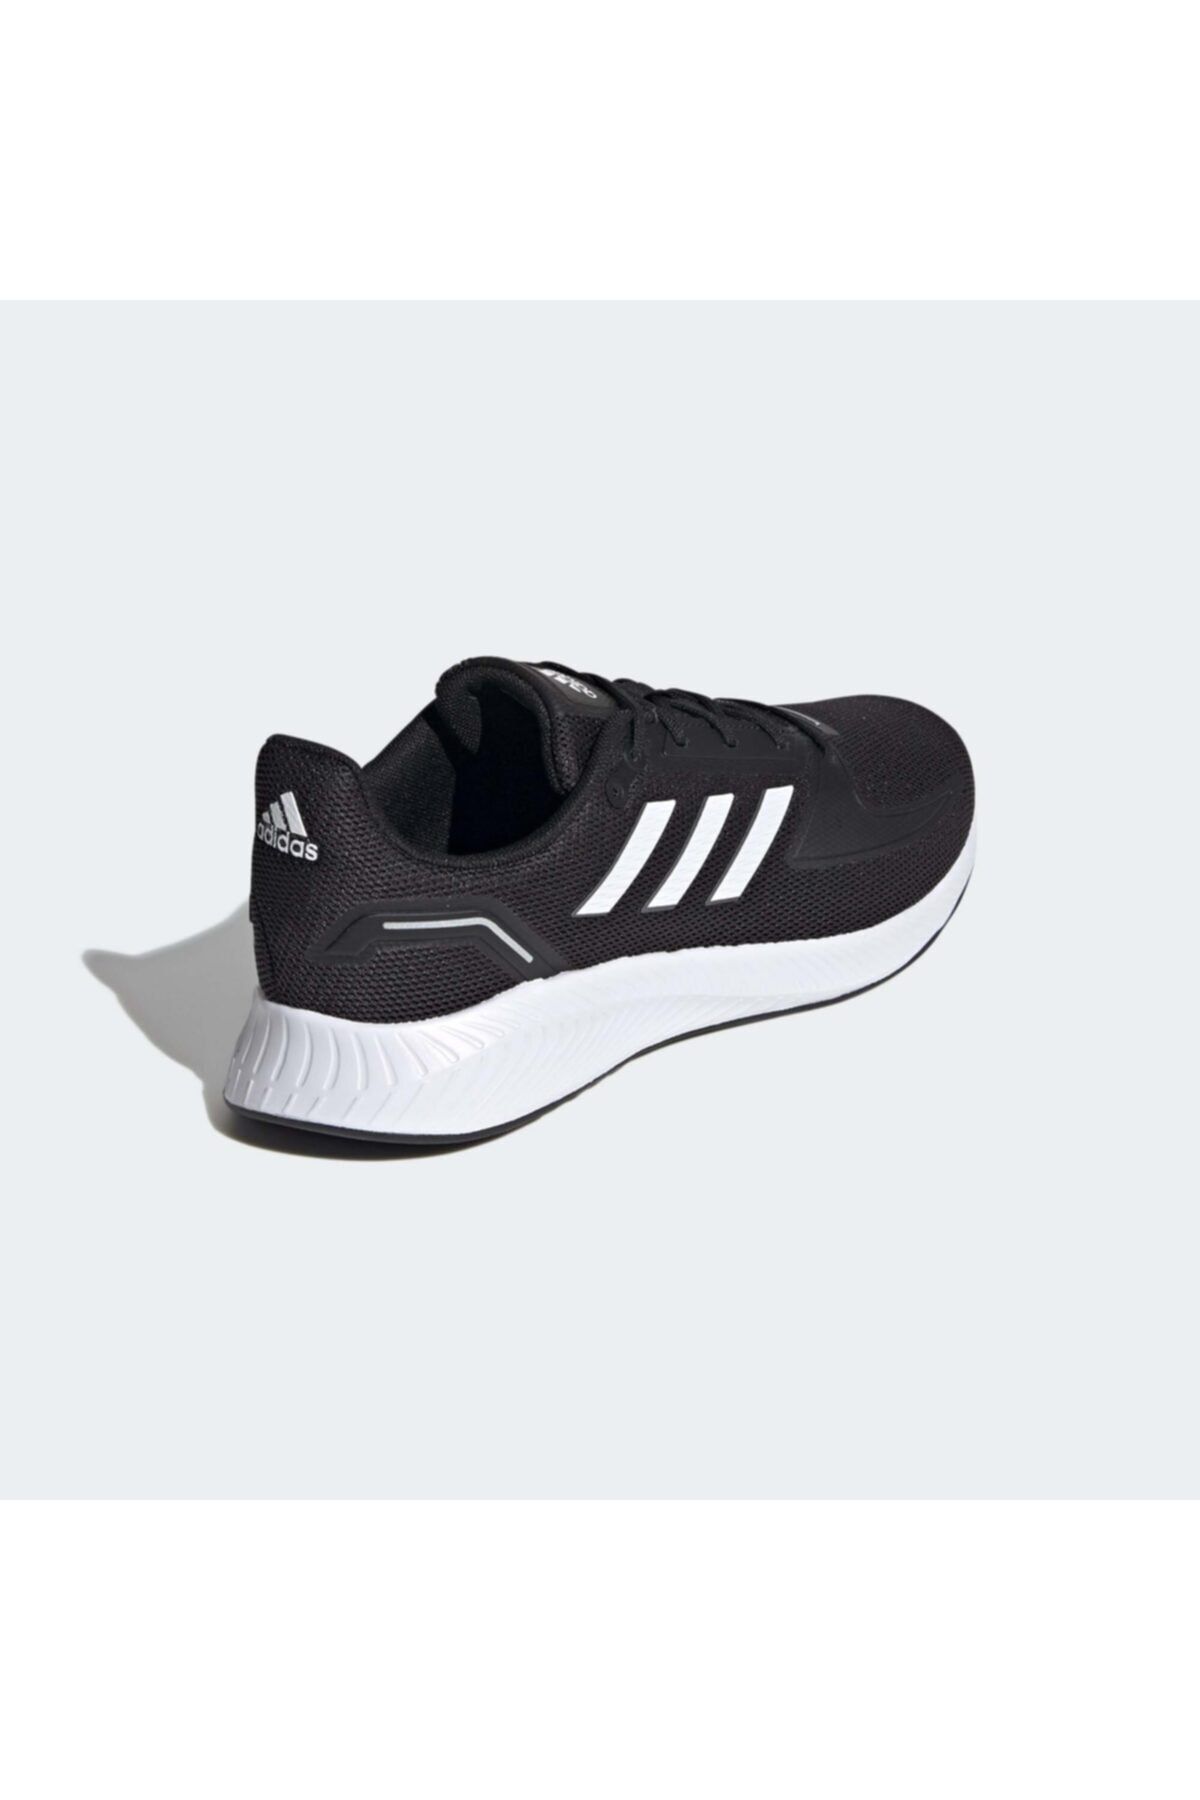 adidas Erkek Runfalcon 2.0 Koşu Ayakkabısı Fiyatı, Yorumları -